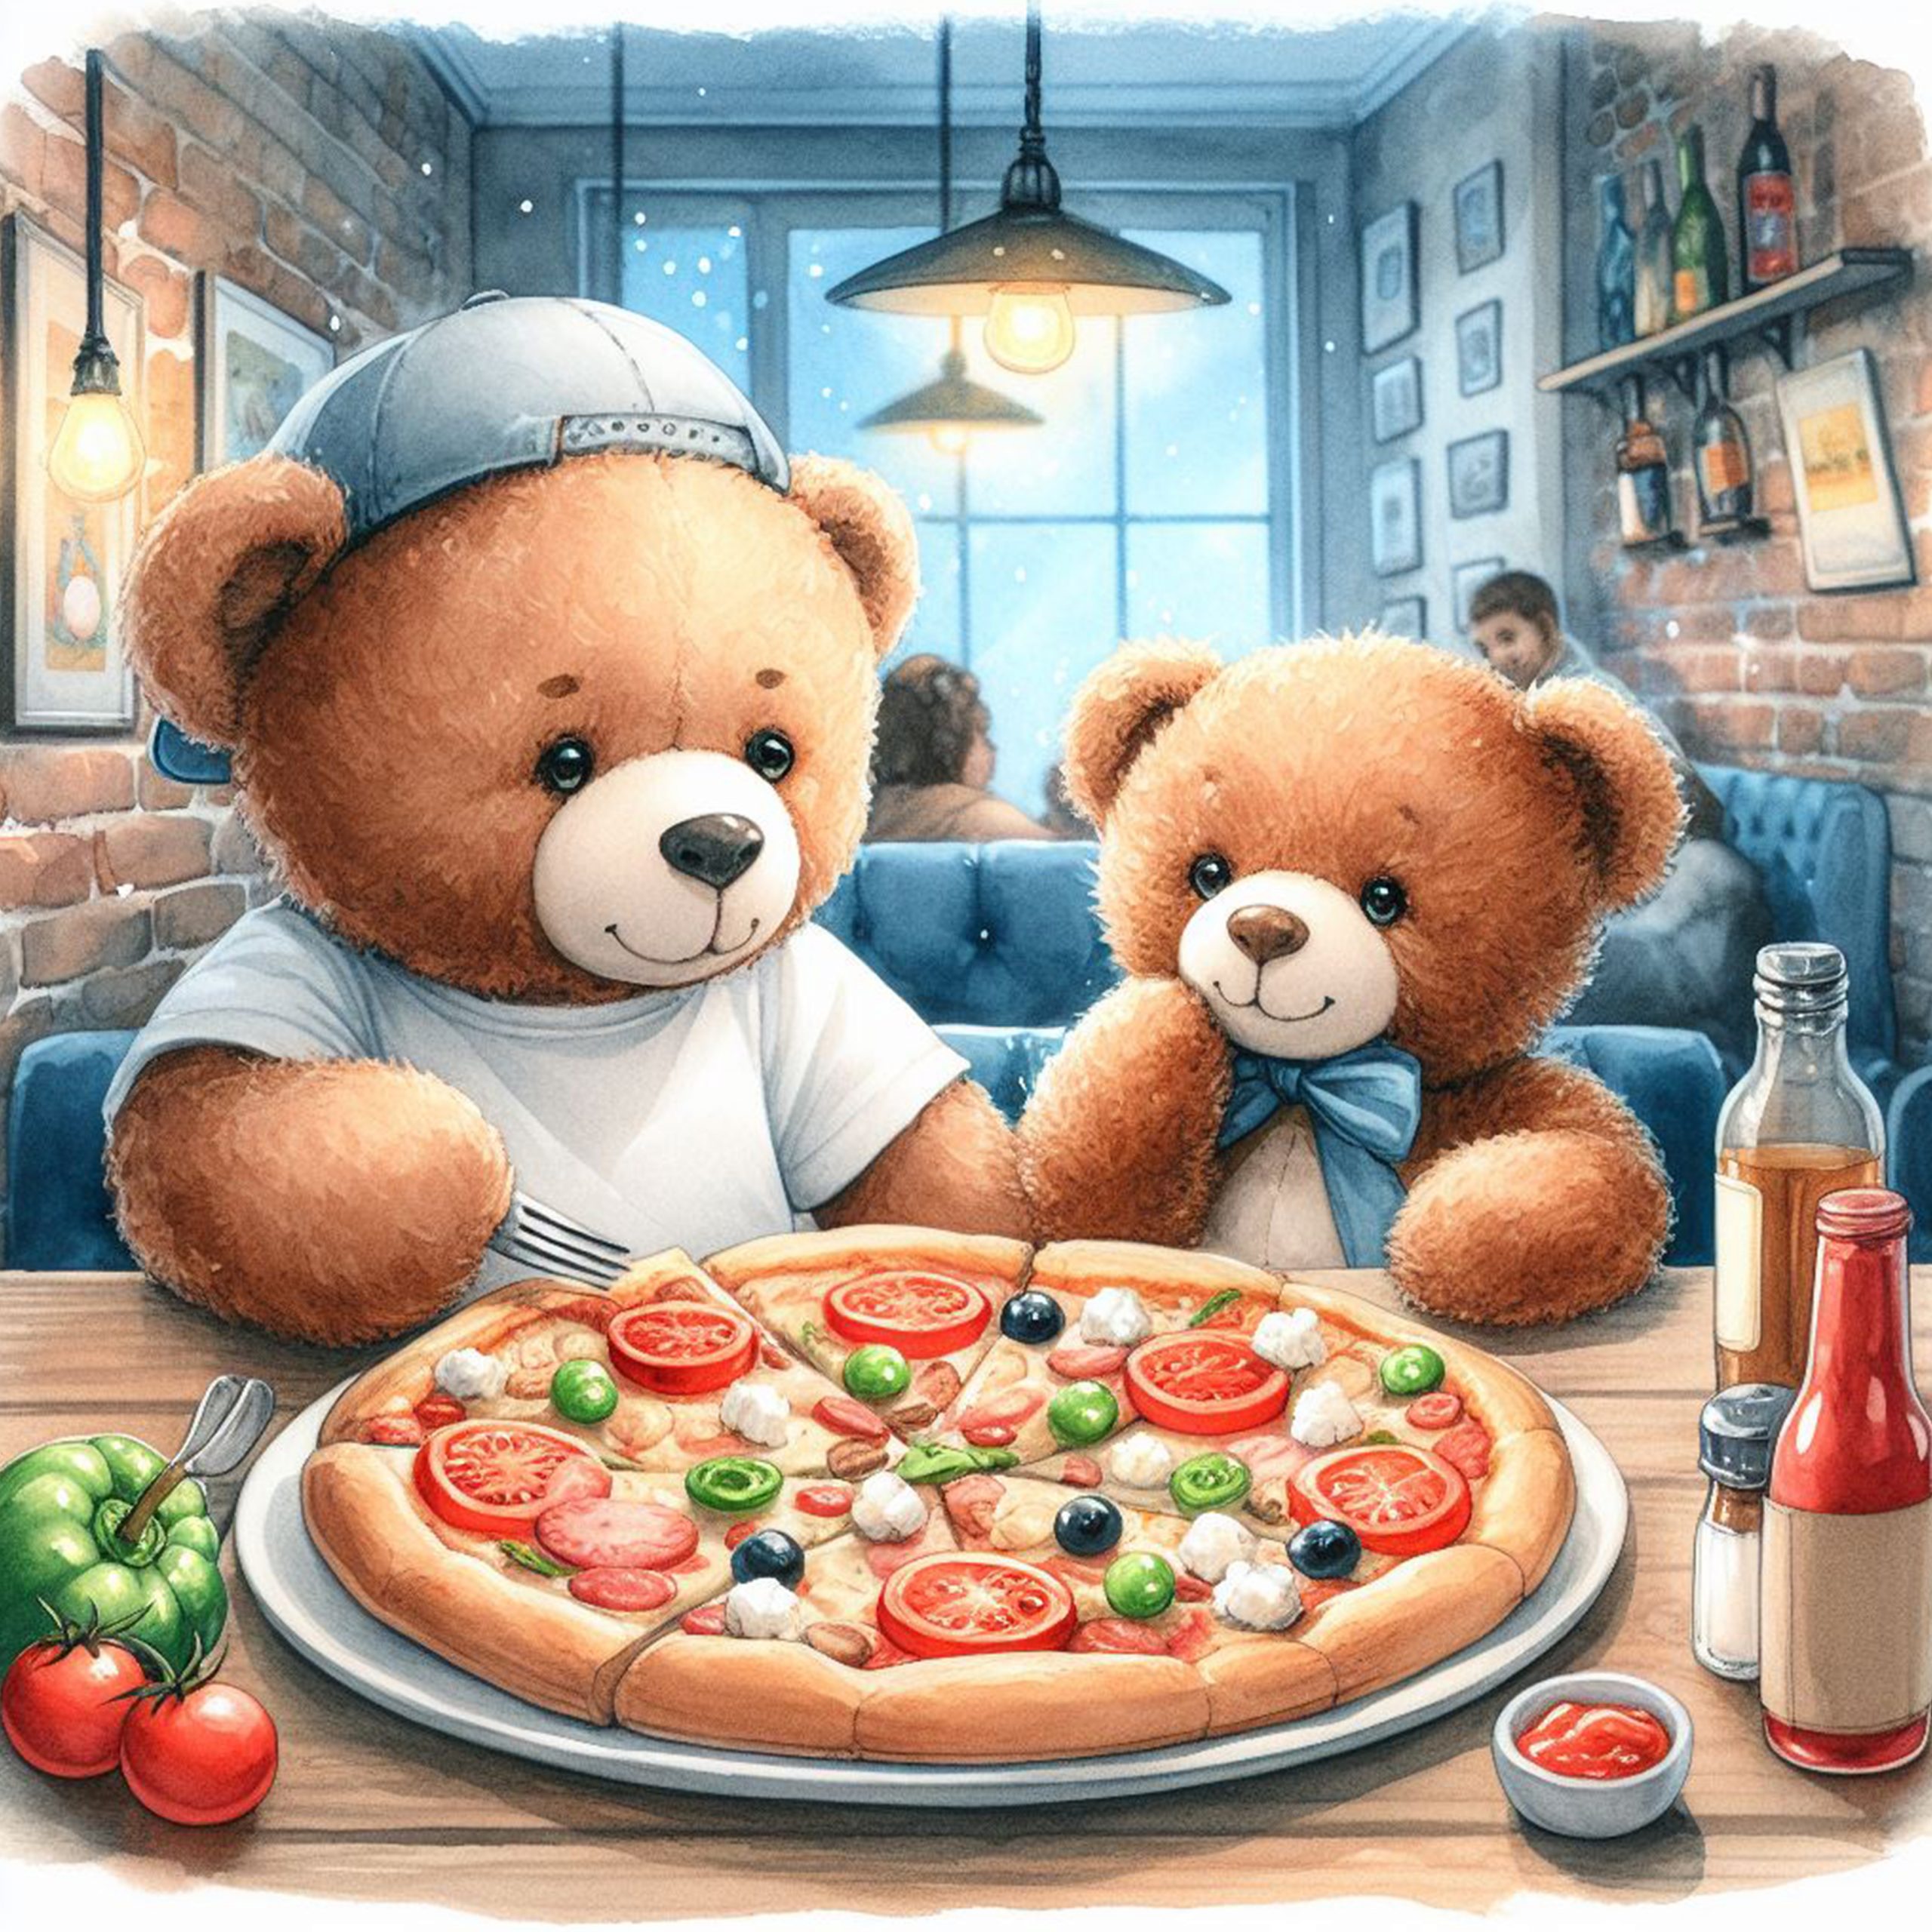 Osos Teddy comiendo pizza en un restaurante italiano